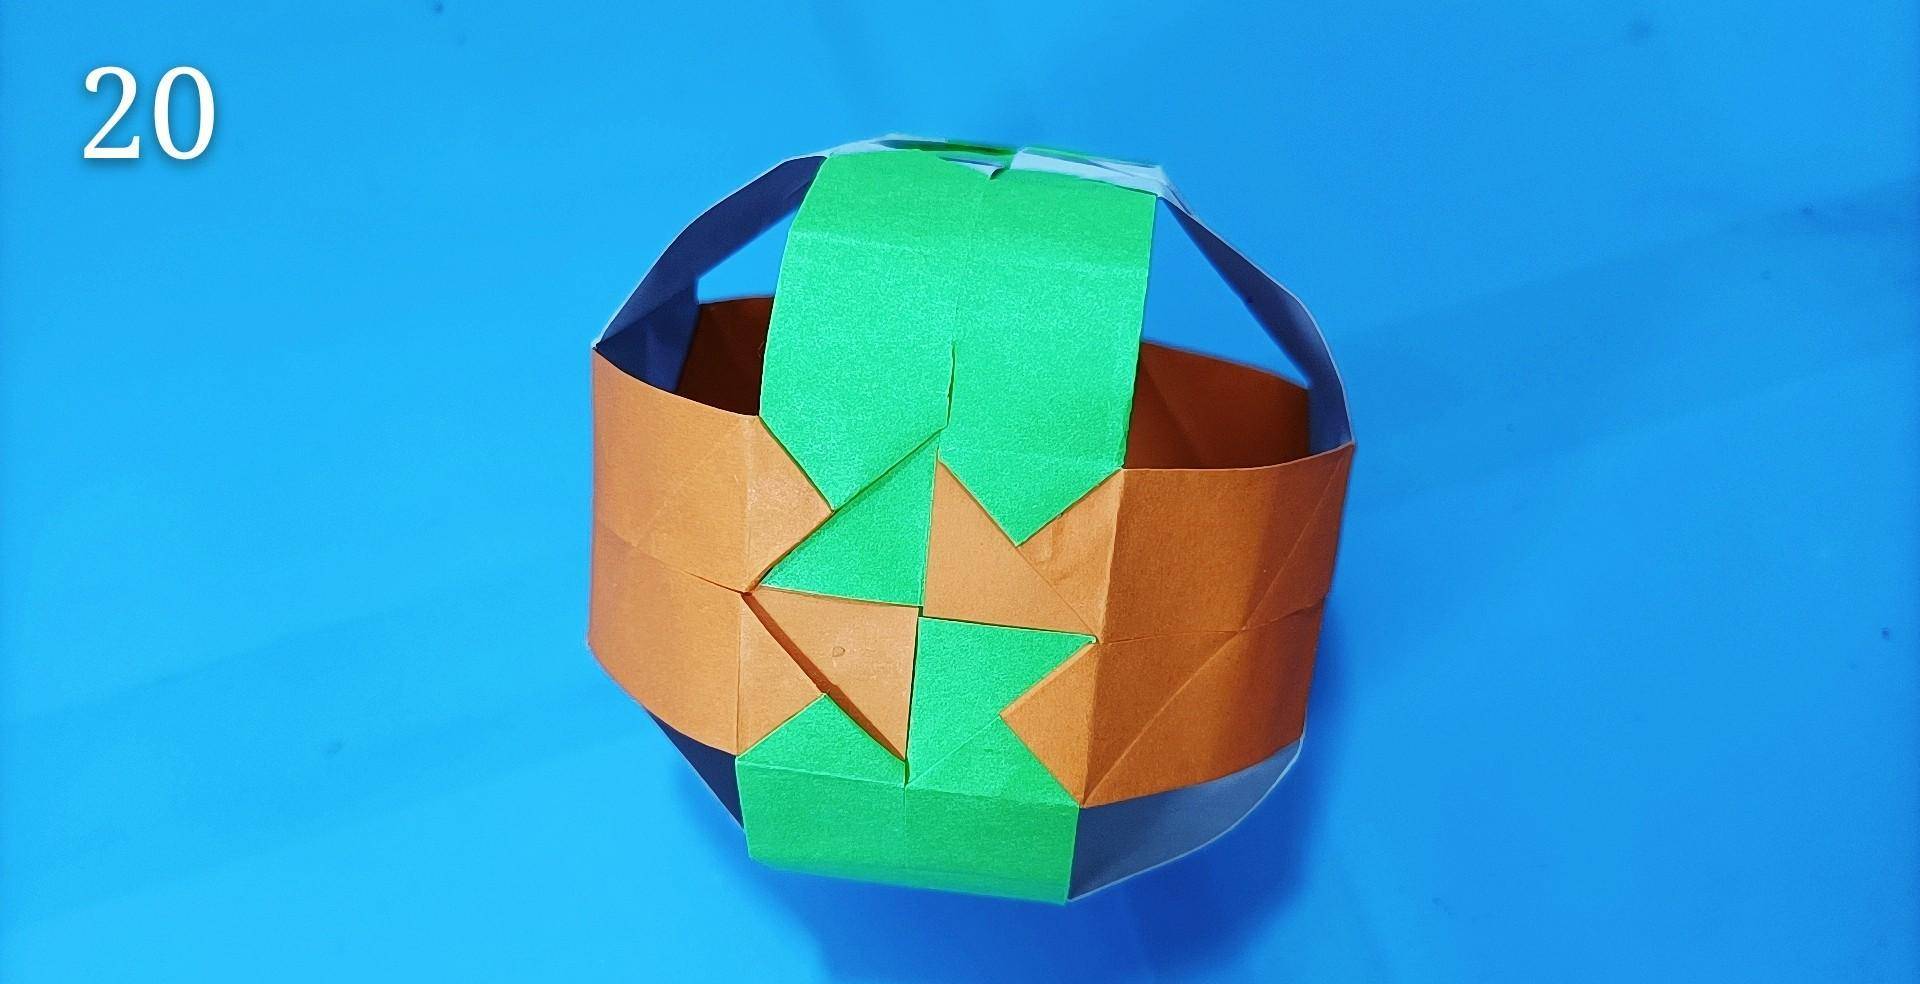 折纸魔术球图片